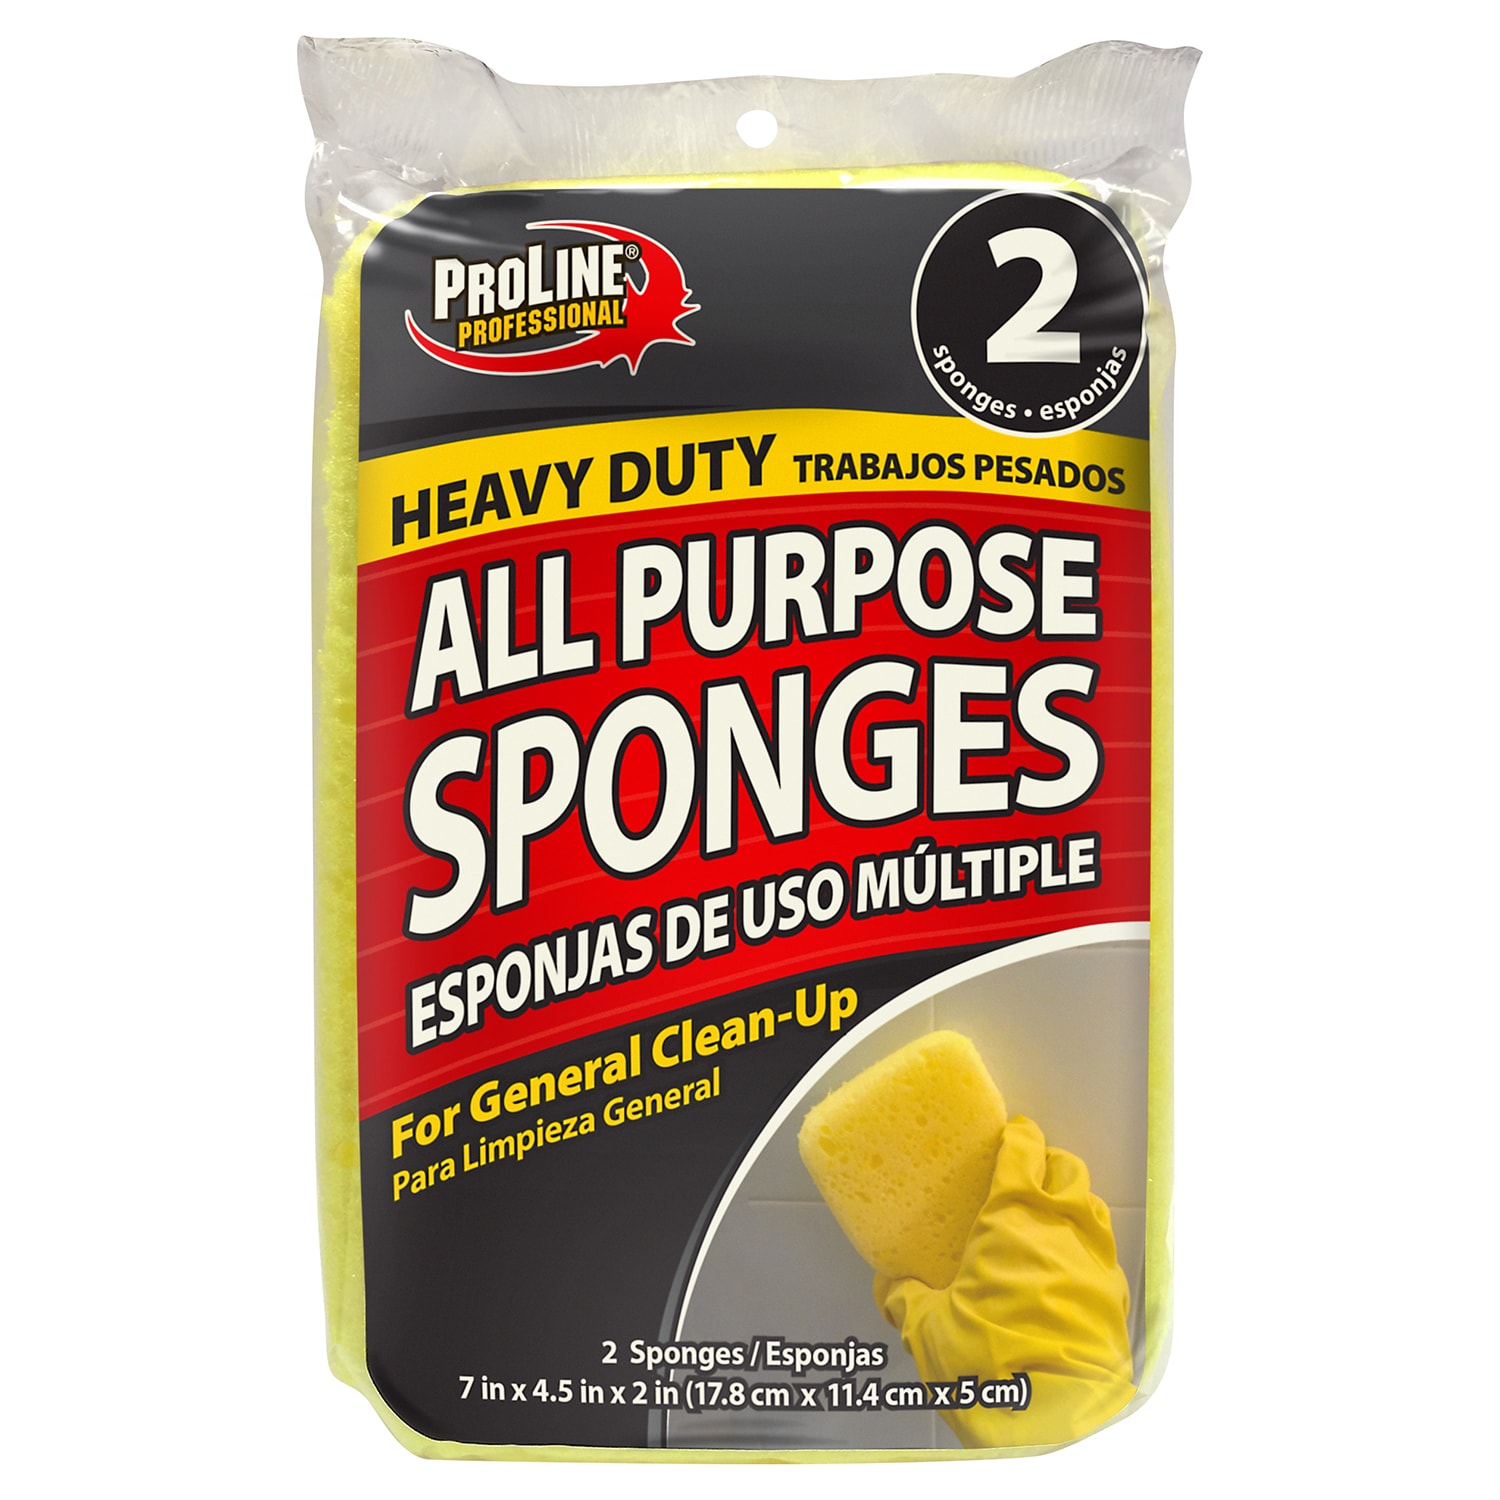 Bọt xốp polyurethane ProLine Sponge sẽ là sản phẩm không thể thiếu trong bộ sưu tập vệ sinh của bạn. Với gói 2 bọt xốp, bạn có thể dễ dàng làm sạch mọi vết bẩn trong nhà của mình. Hãy xem hình ảnh liên quan để khám phá sức mạnh của bọt xốp ProLine Sponge và làm cho nhà của bạn luôn sạch sẽ!